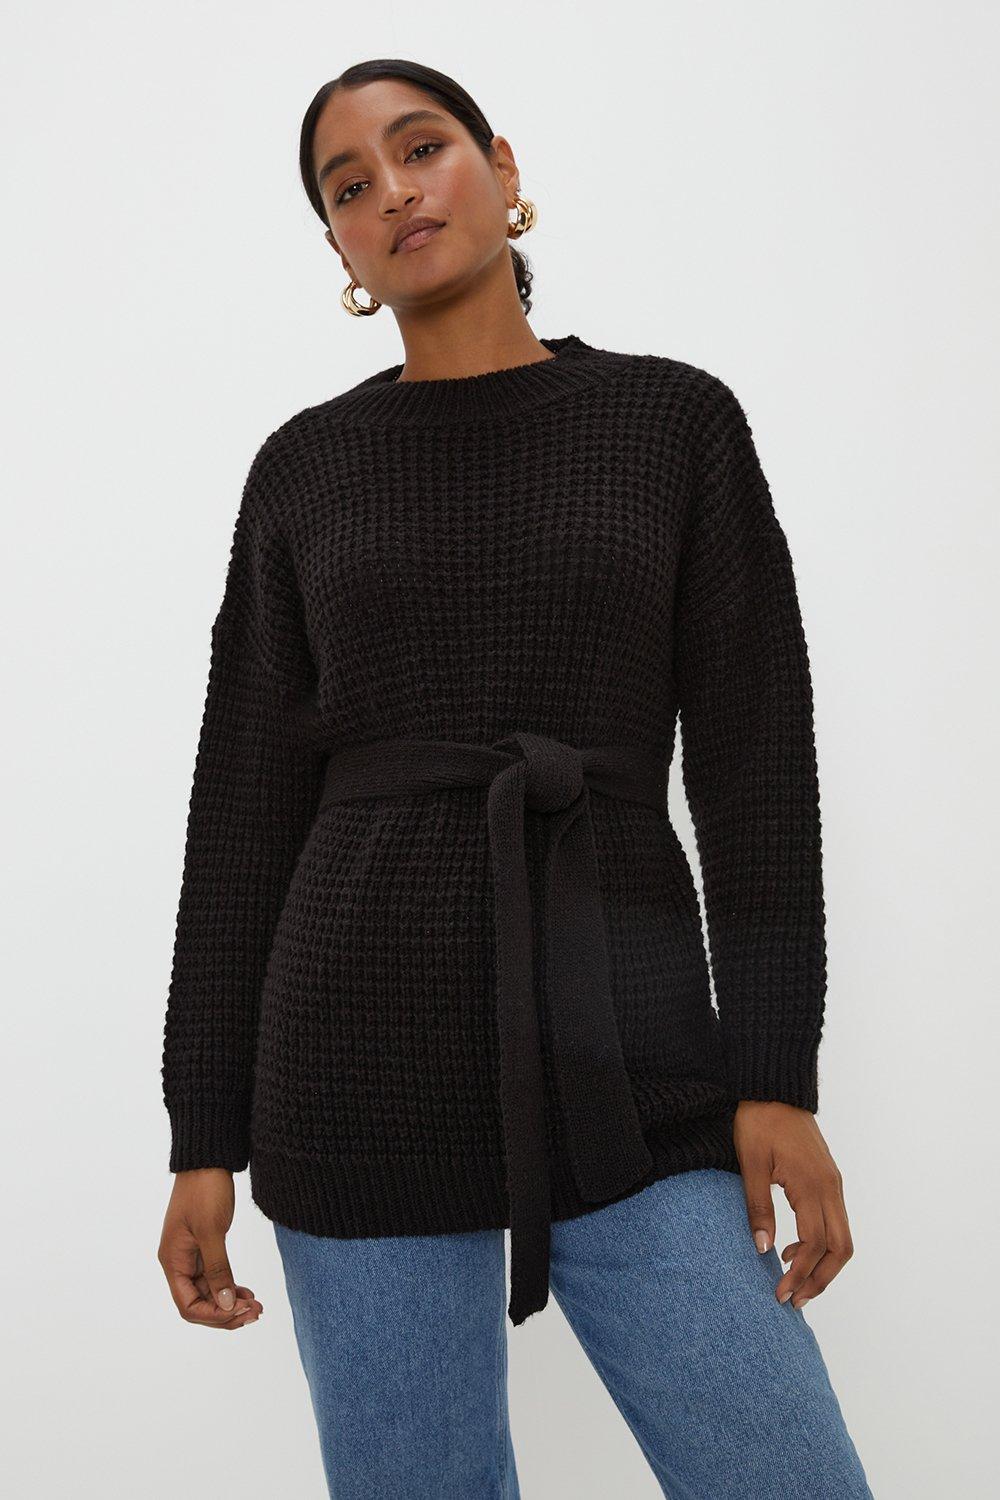 Women's Belted Waffle Stitch Soft Knit Tunic - black - L